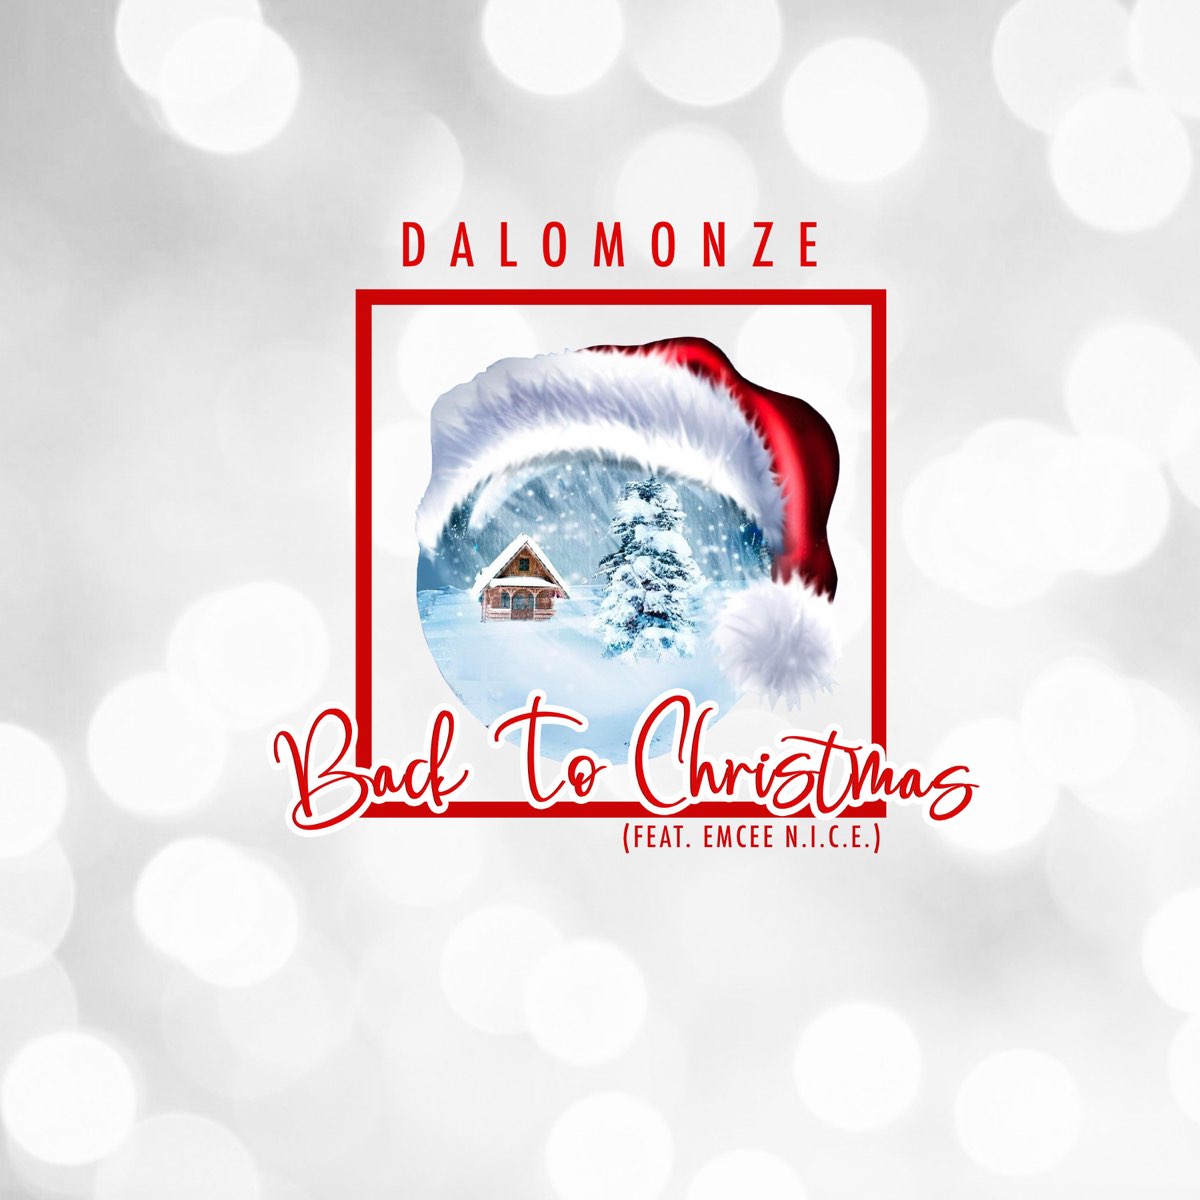 Dalomonze-Back-to-Christmas-ft.-Emcee-N.I.C.E.